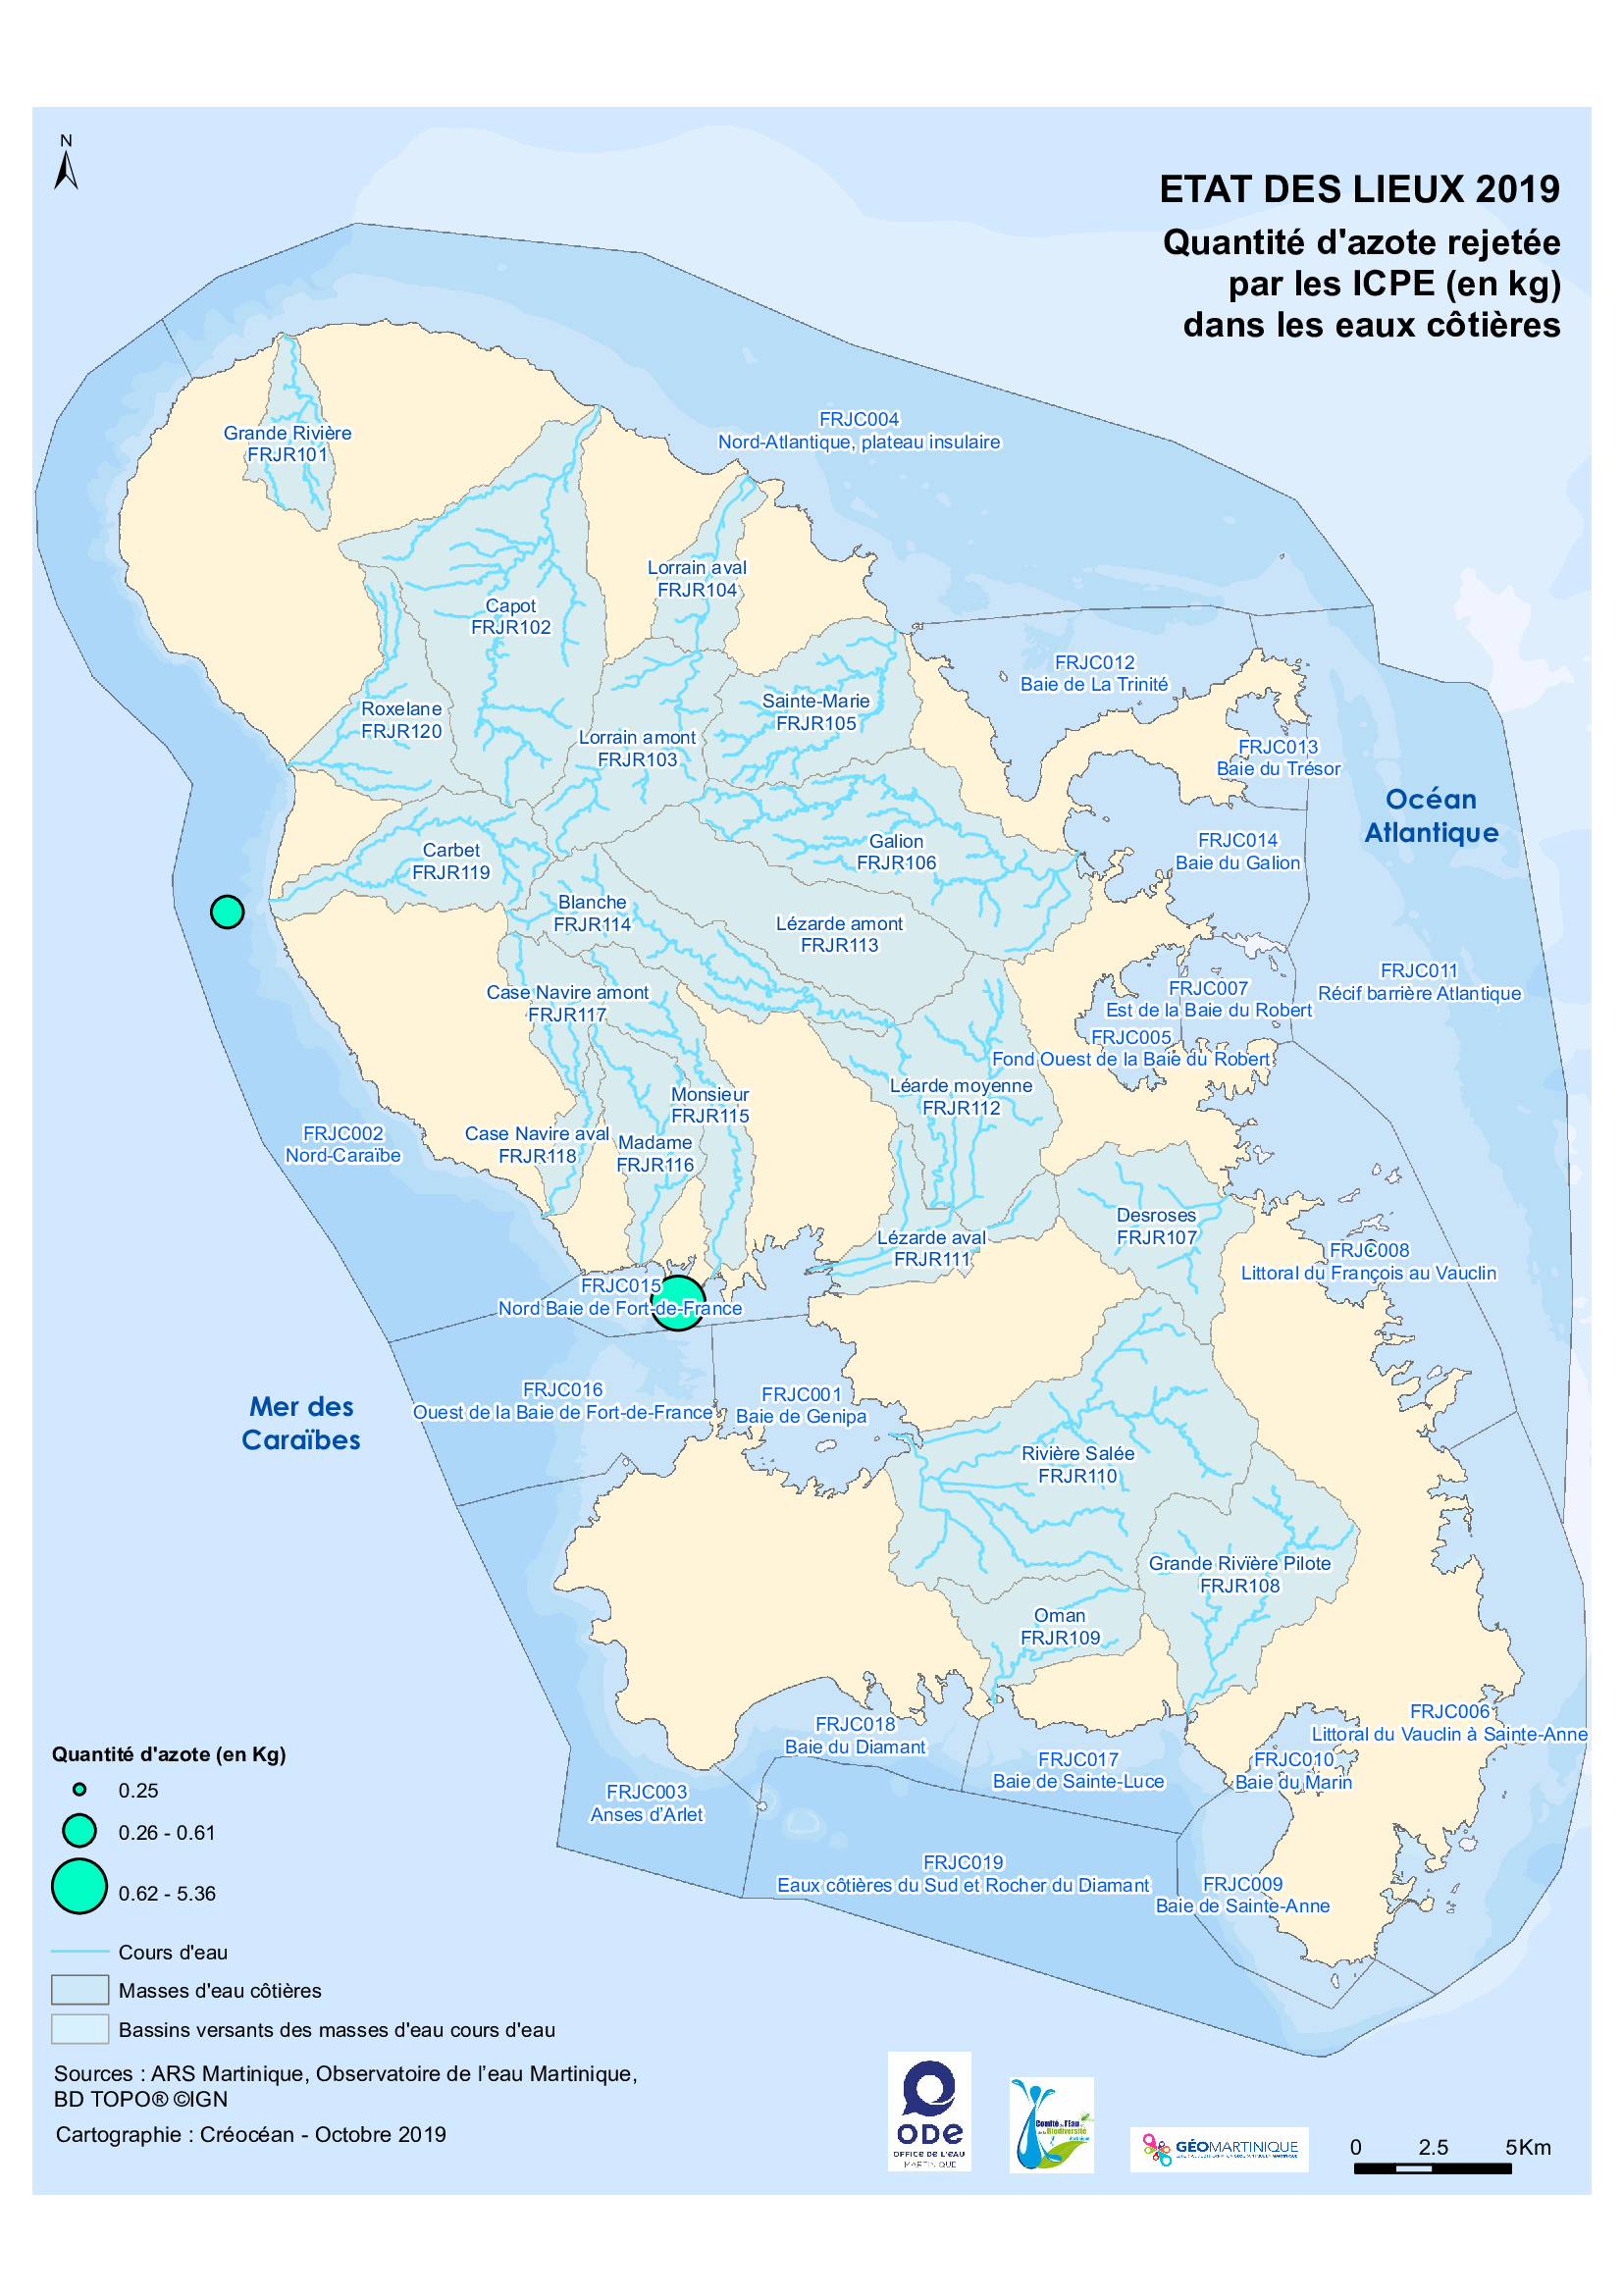 EDL 2019 - Quantité d'azote rejetée par les ICPE (en kg) dans les eaux côtières